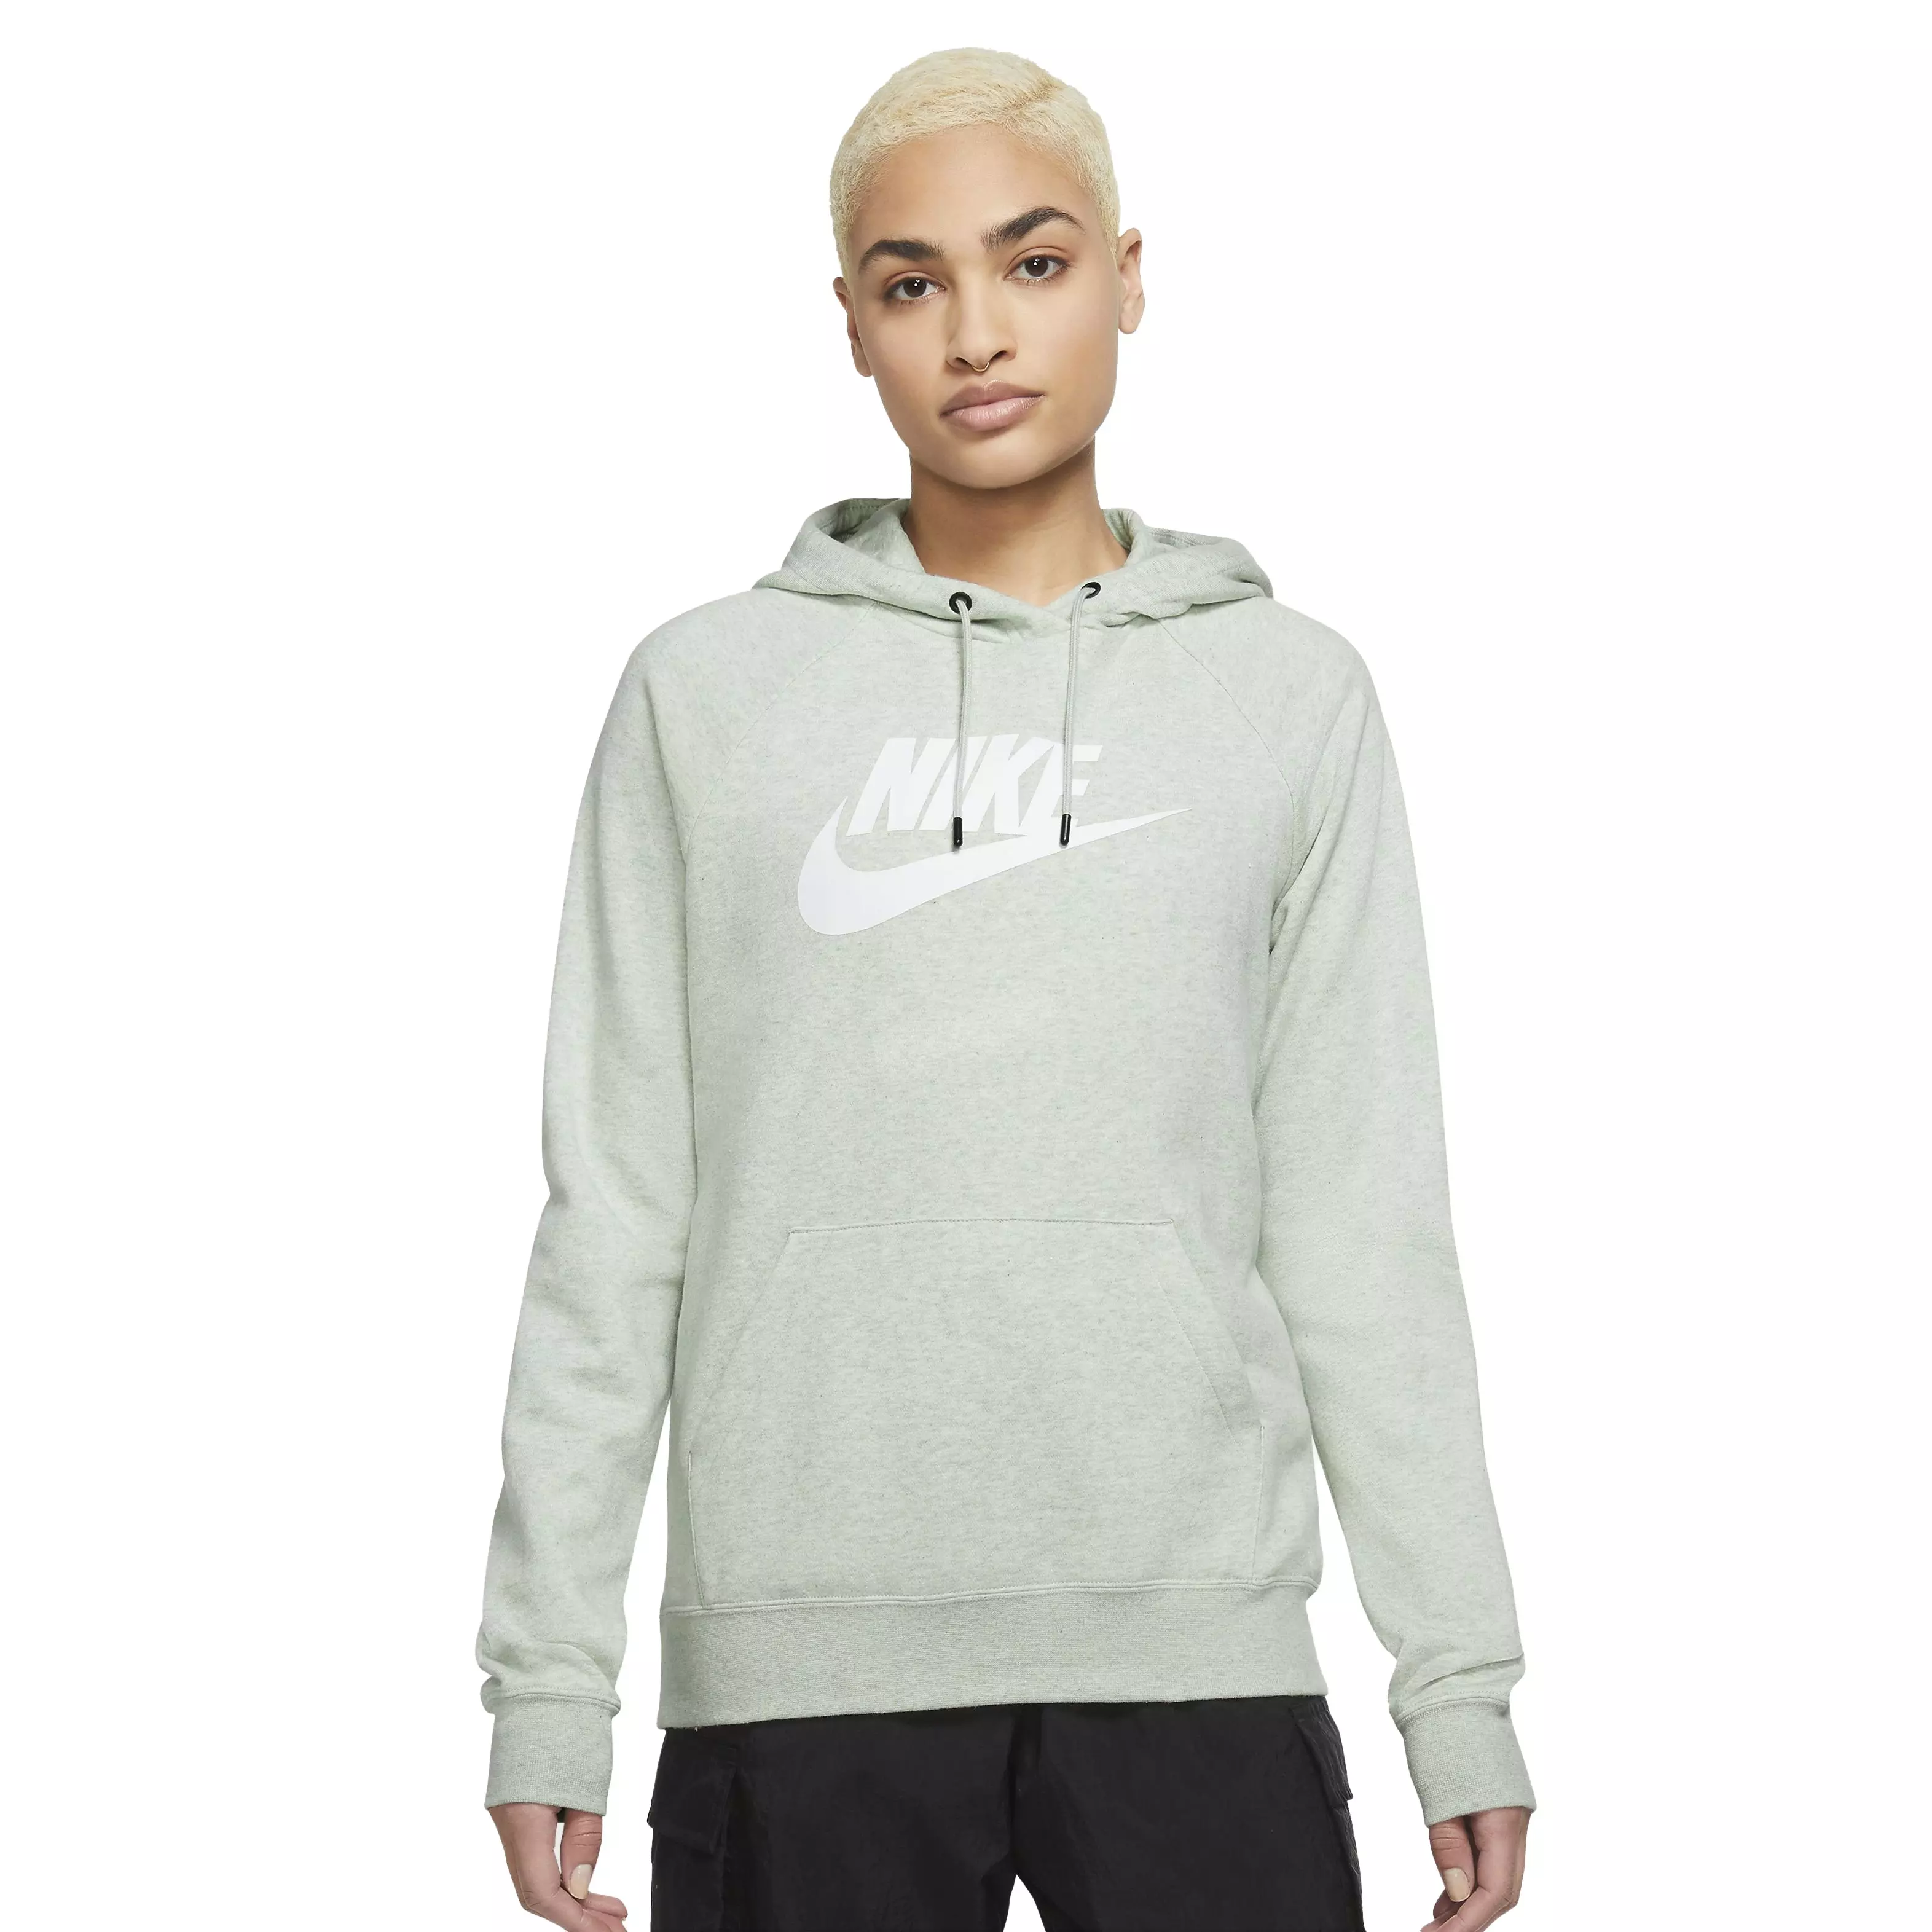 Nike Women's Sportswear Essential Fleece Pullover Hoodie - Olive